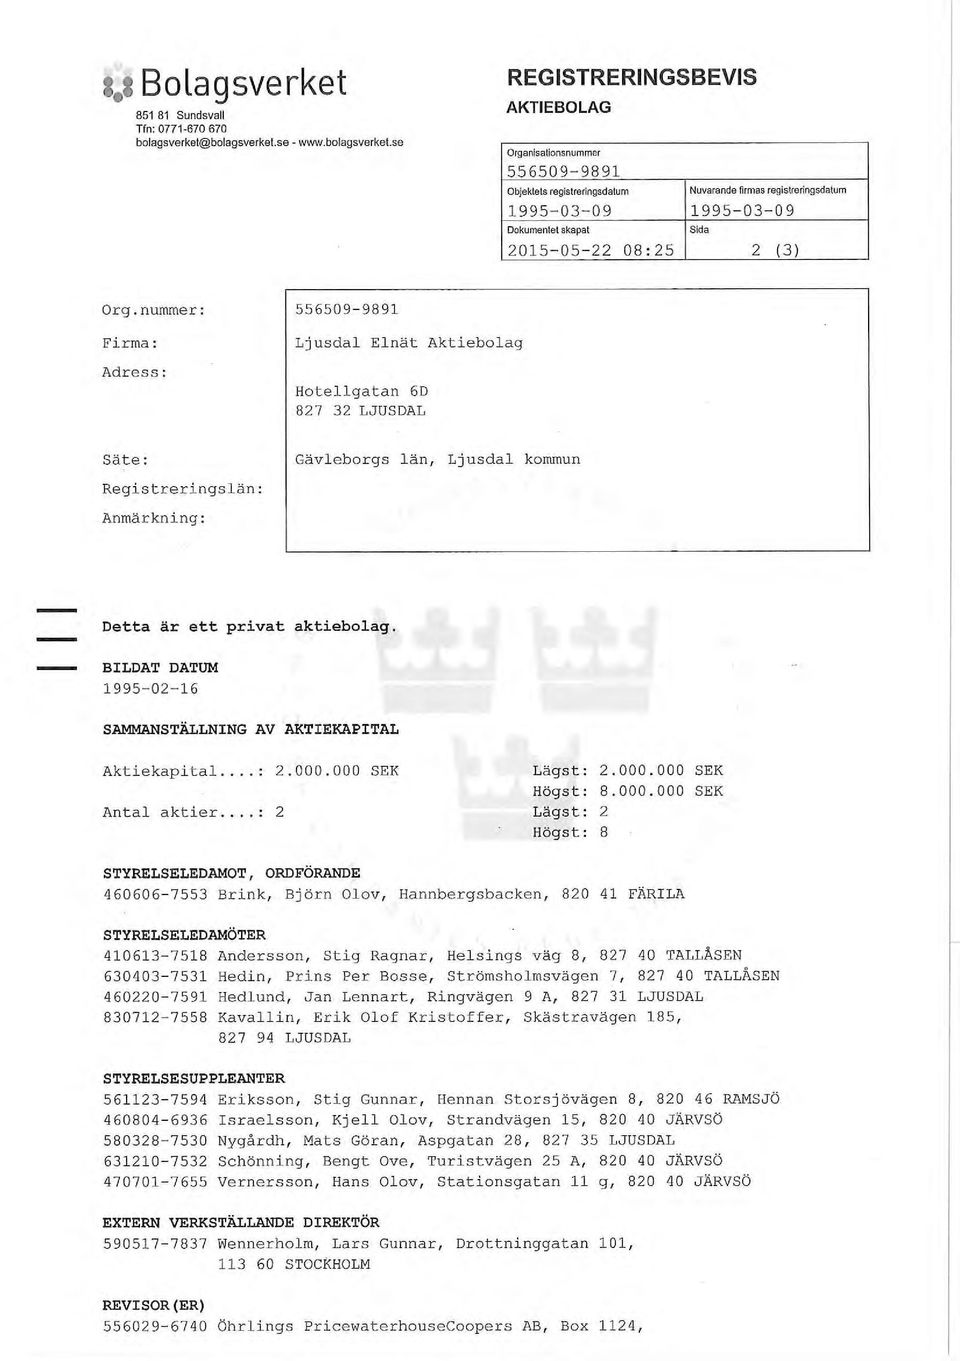 BILDAT DATUM 1995-02-16 SAMMANSTÄLLNING AV AKTIEKAPITAL Aktiekapital - 2.000.